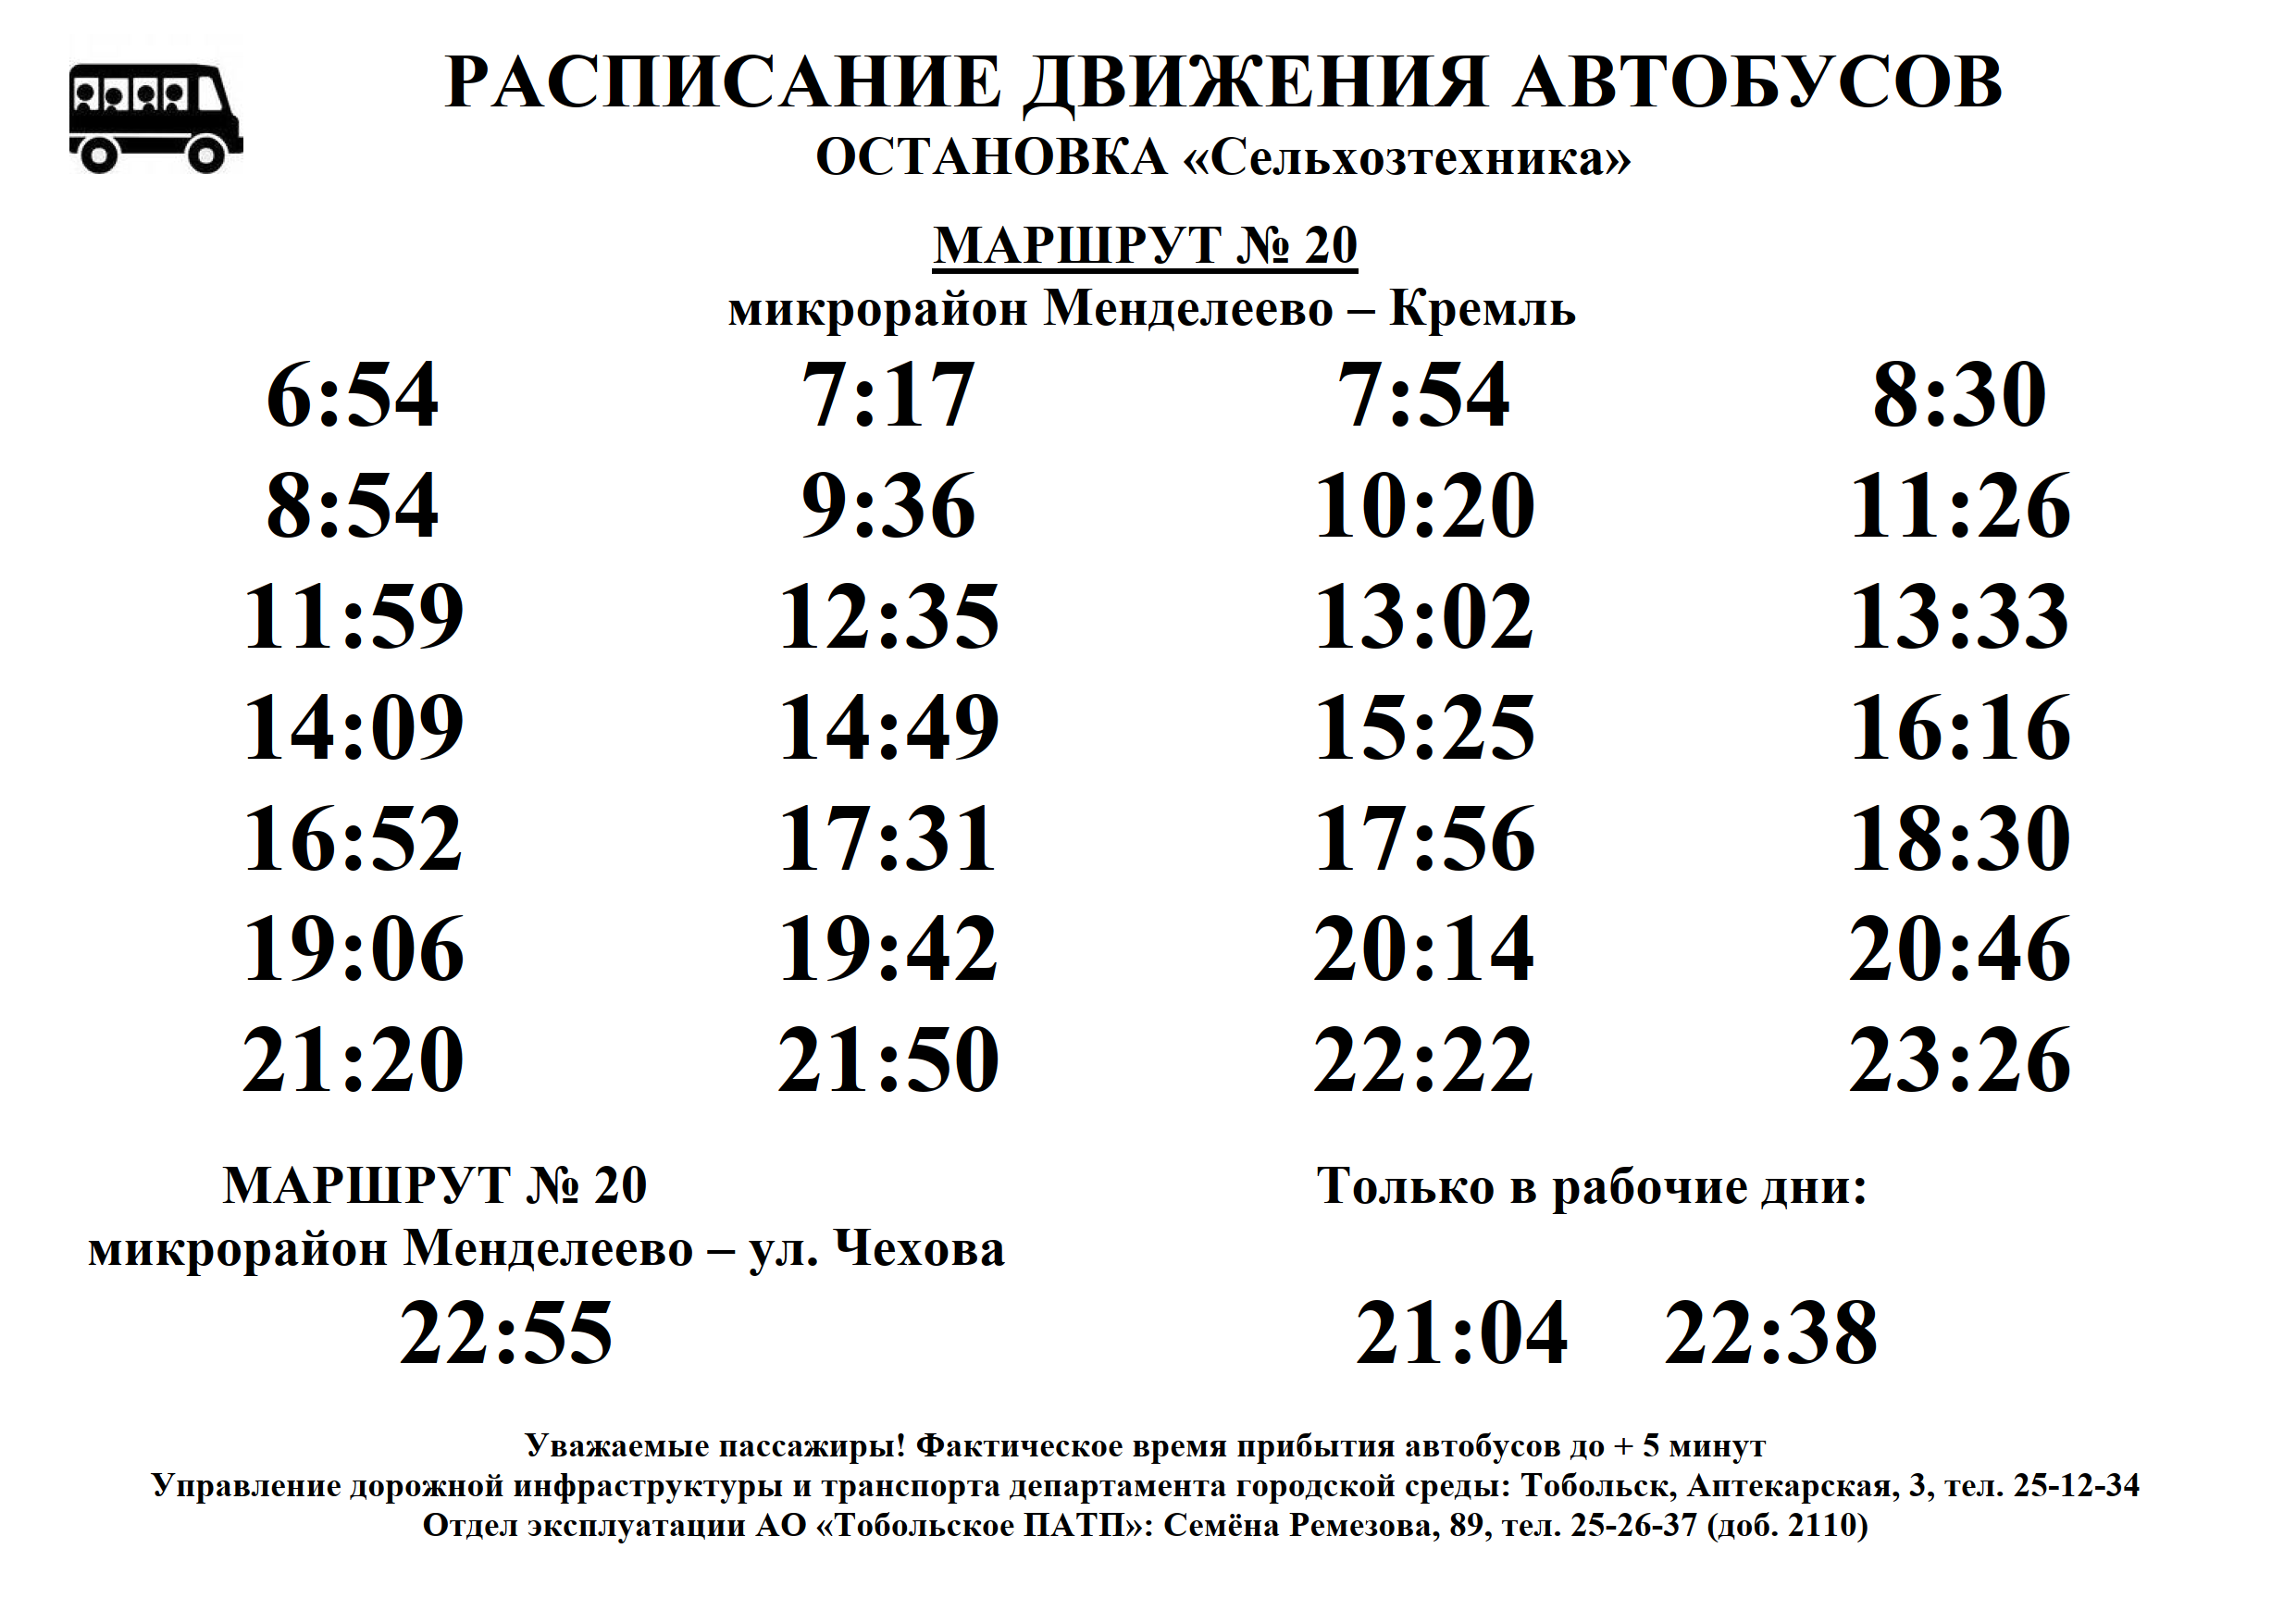 Автобус маршрут 28 челябинск. Расписание автобусов. Расписание движения автобусов. Расписание маршруток. График автобусов.